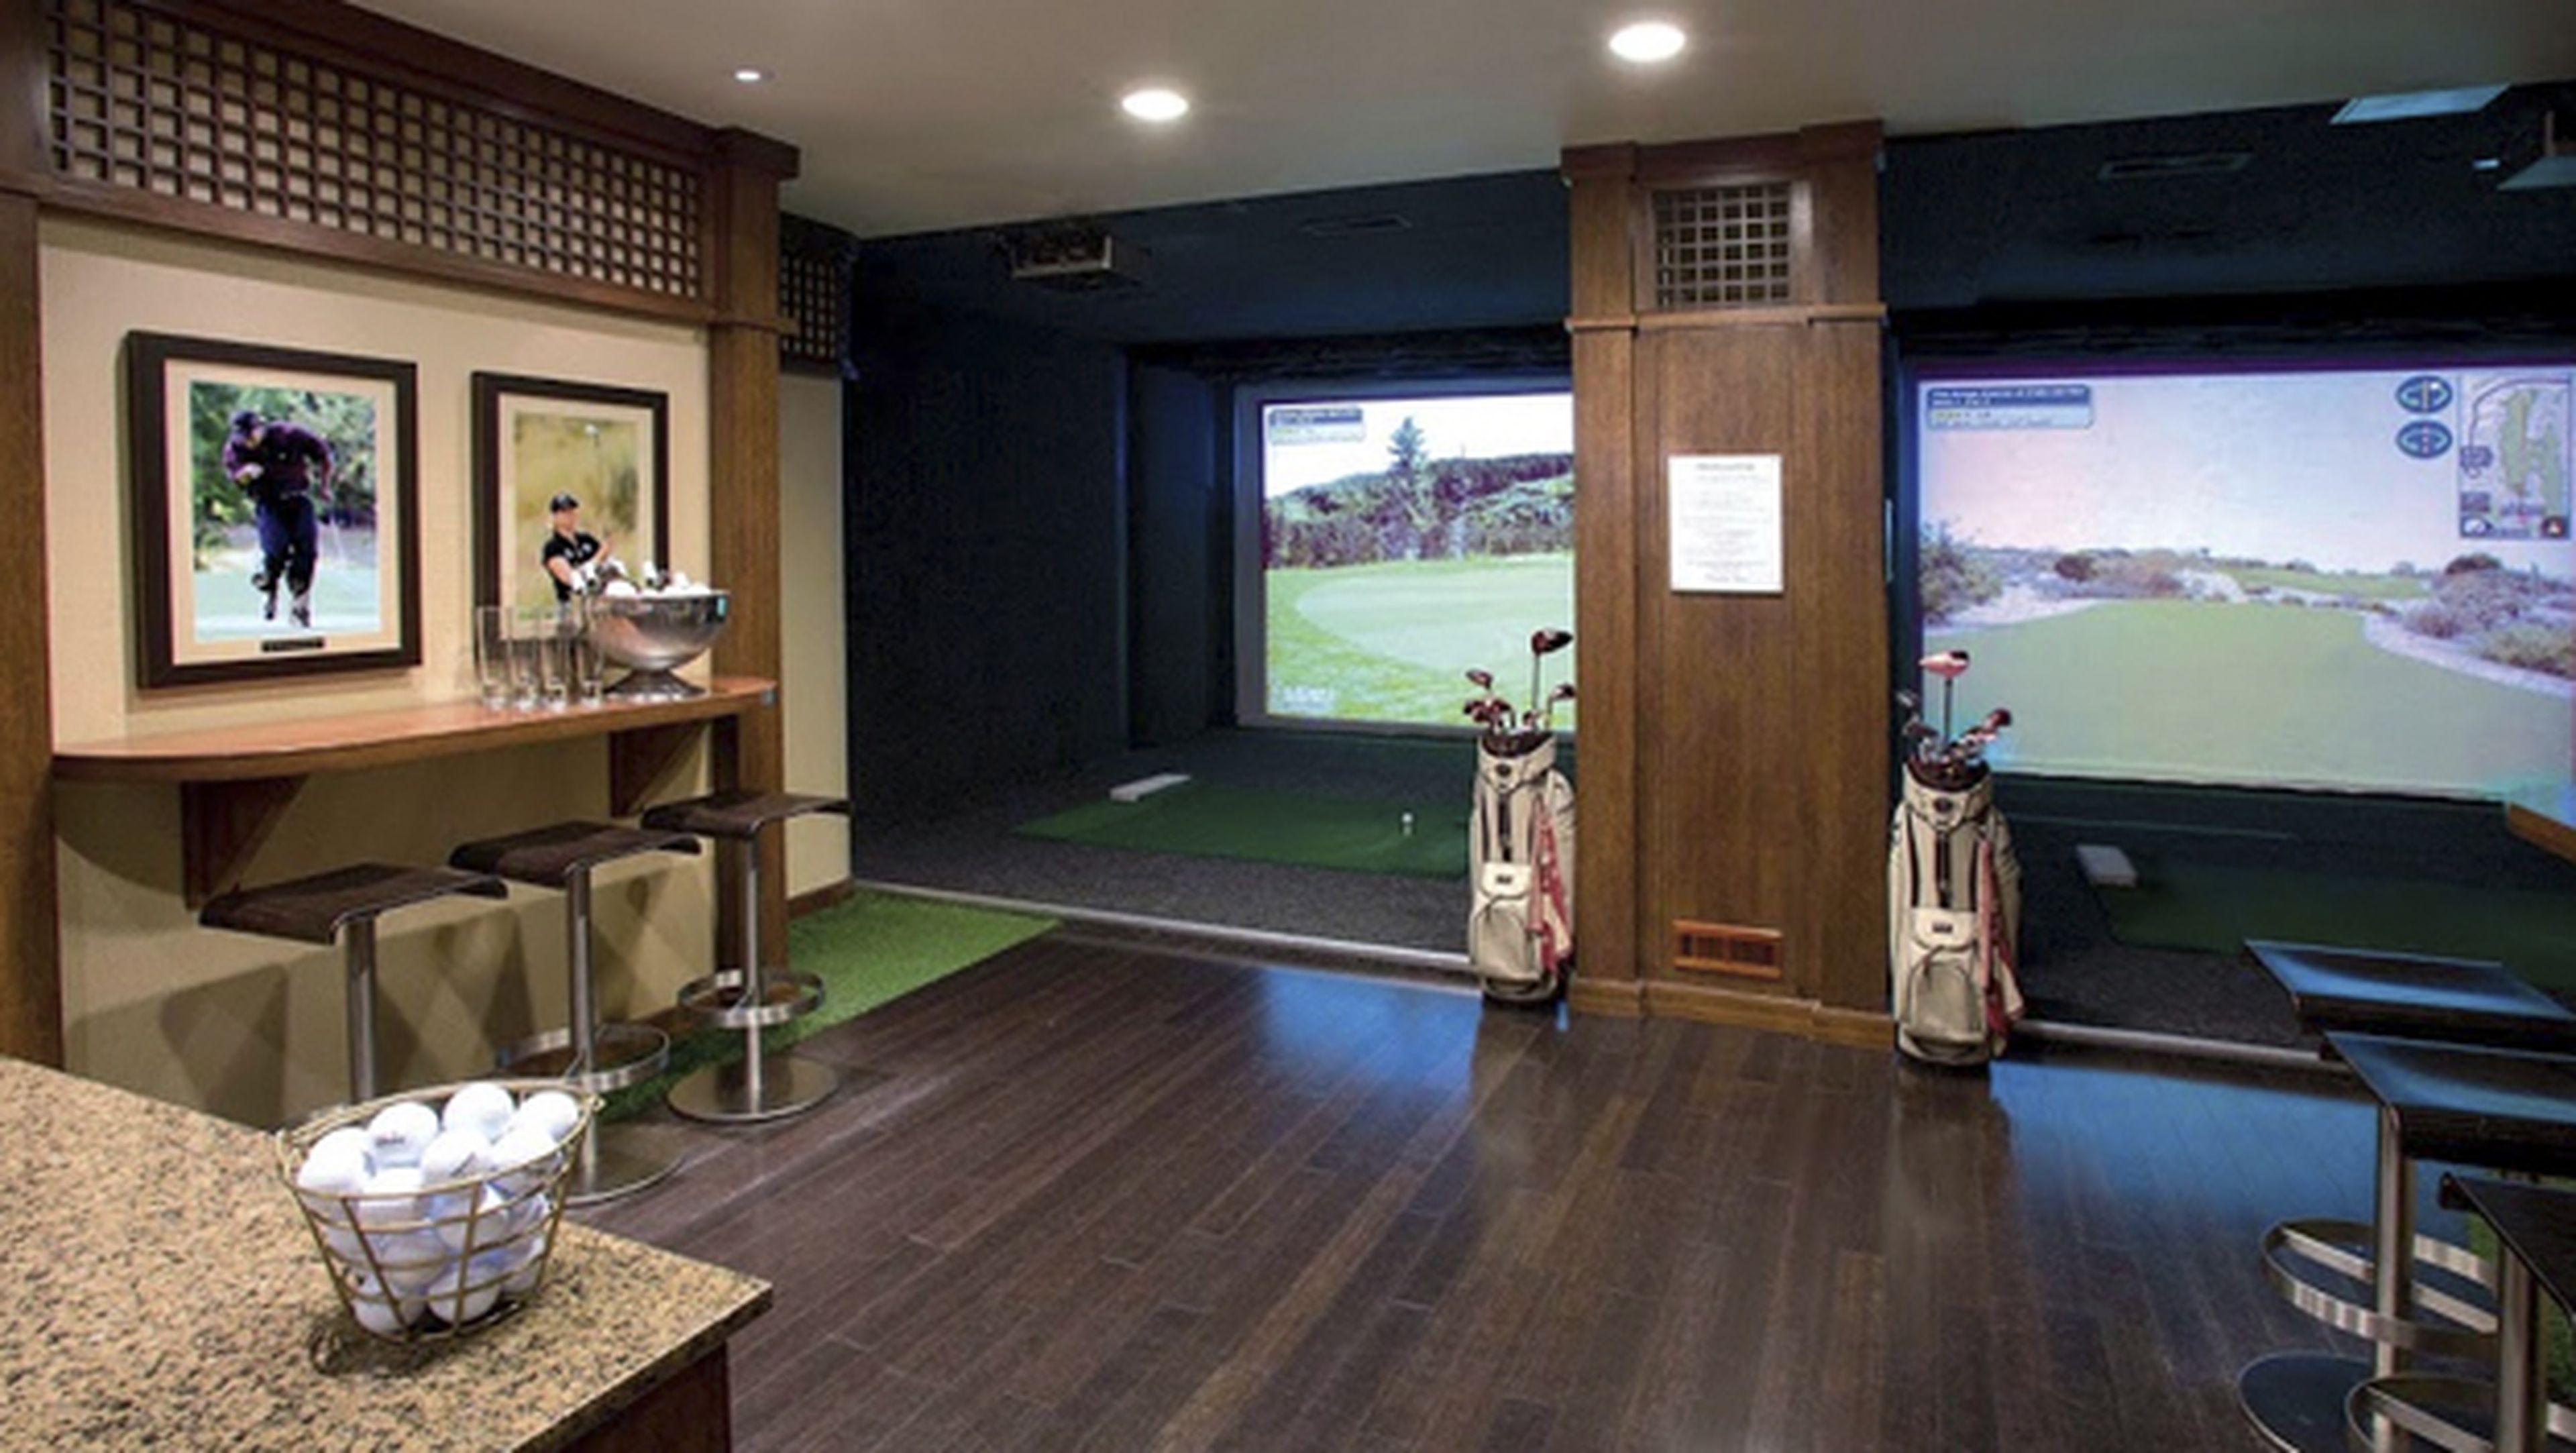 HOTEL 1000, con un campo de golf virtual para eliminar tensiones